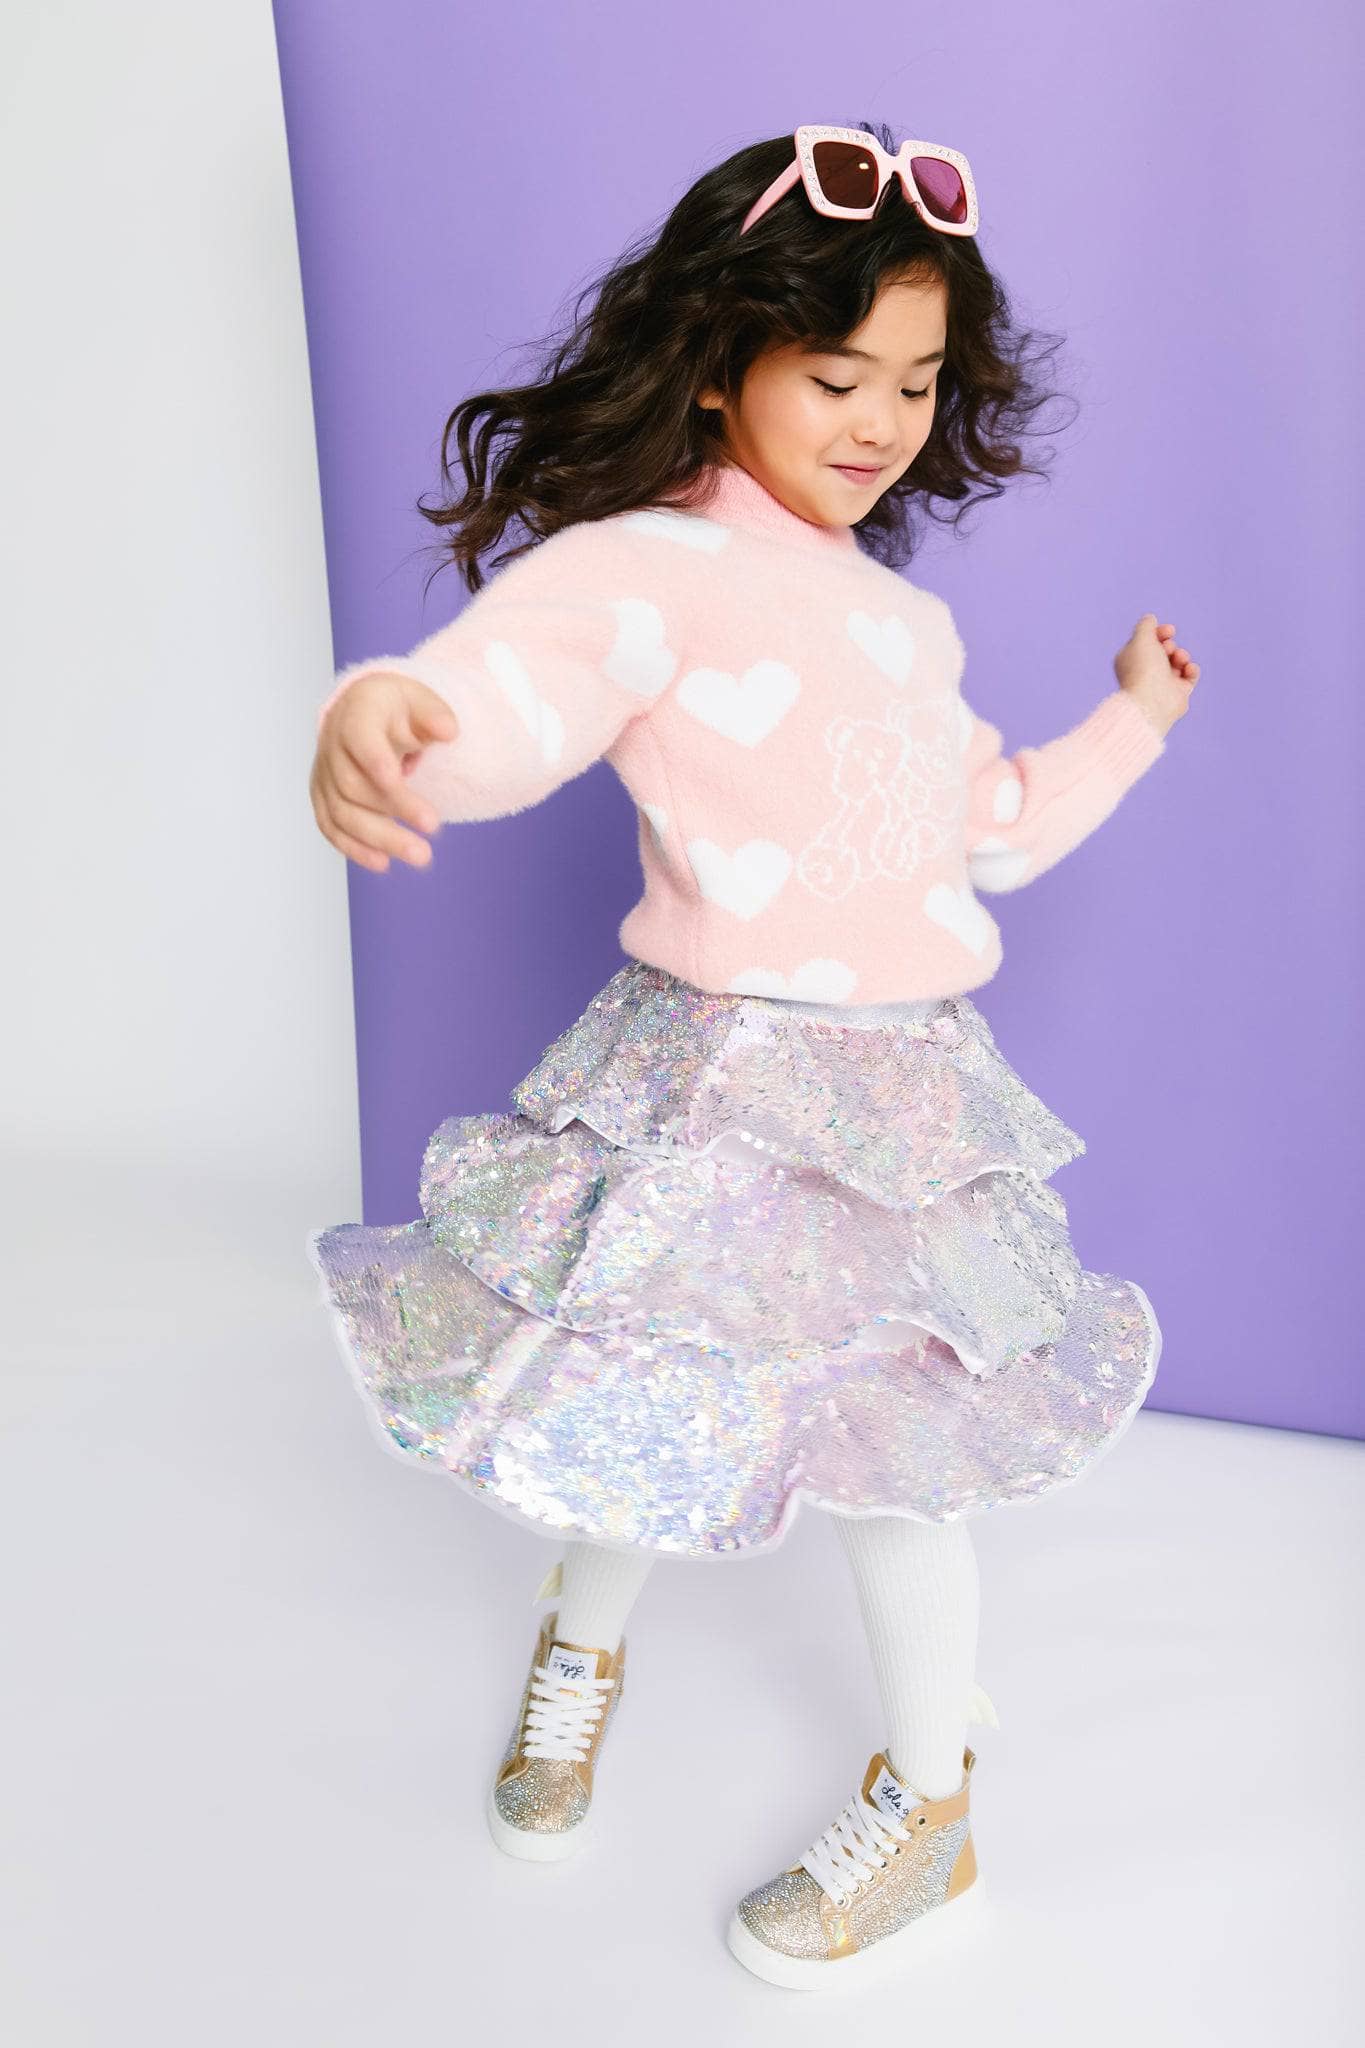 Miss Lola  Mini Obsession Pink Sequins Mini Skirt – MISS LOLA